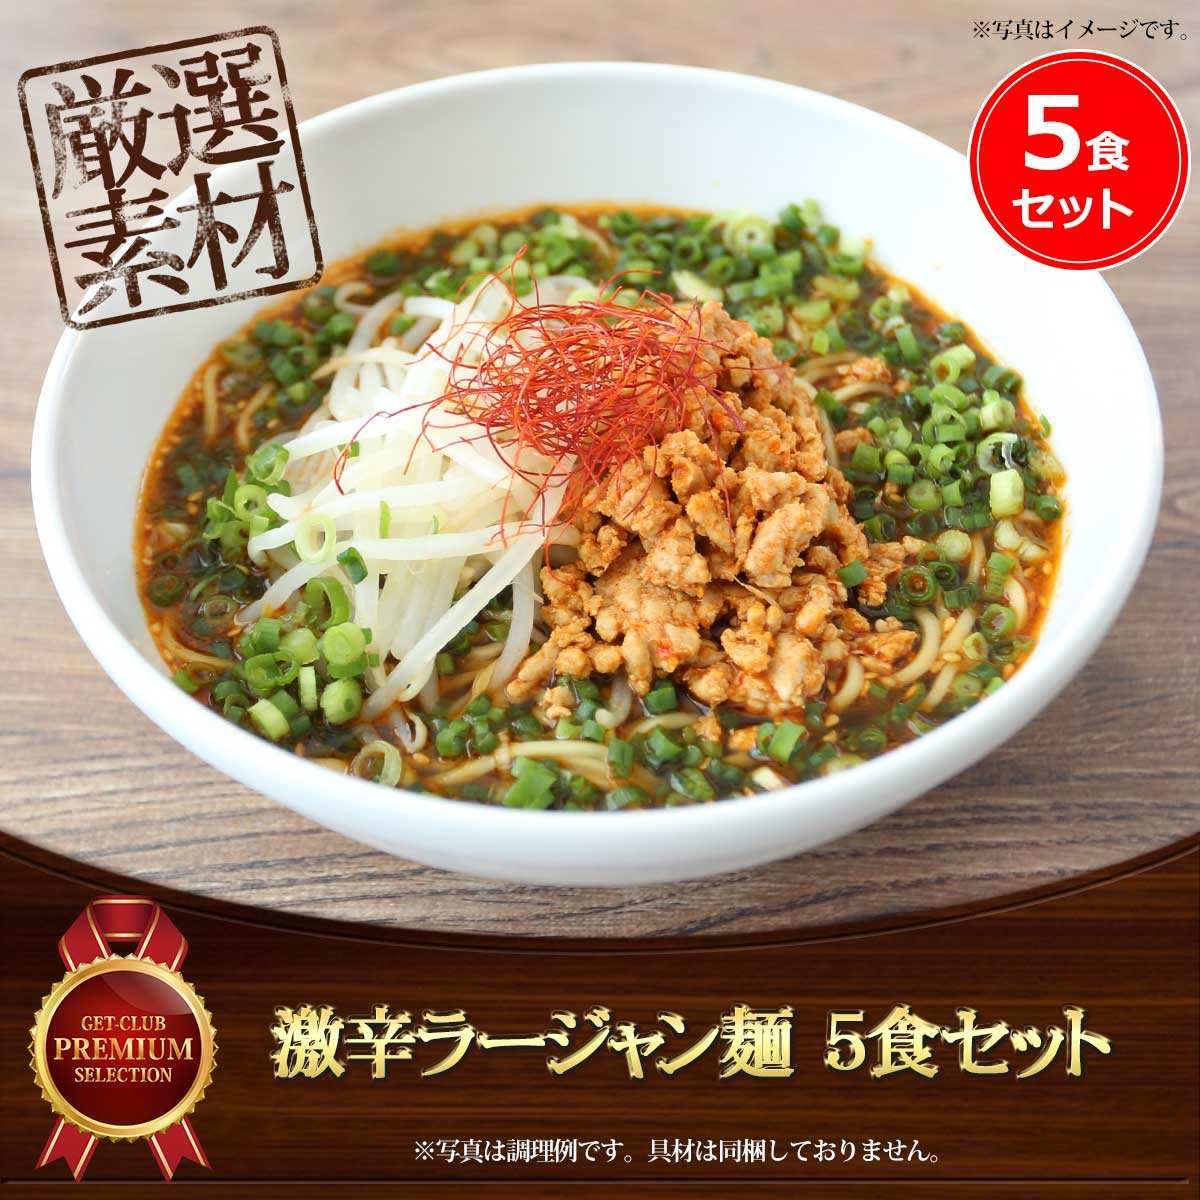 激辛ラージャン麺（5食セット）老舗製麺所の中太ストレート麺使用